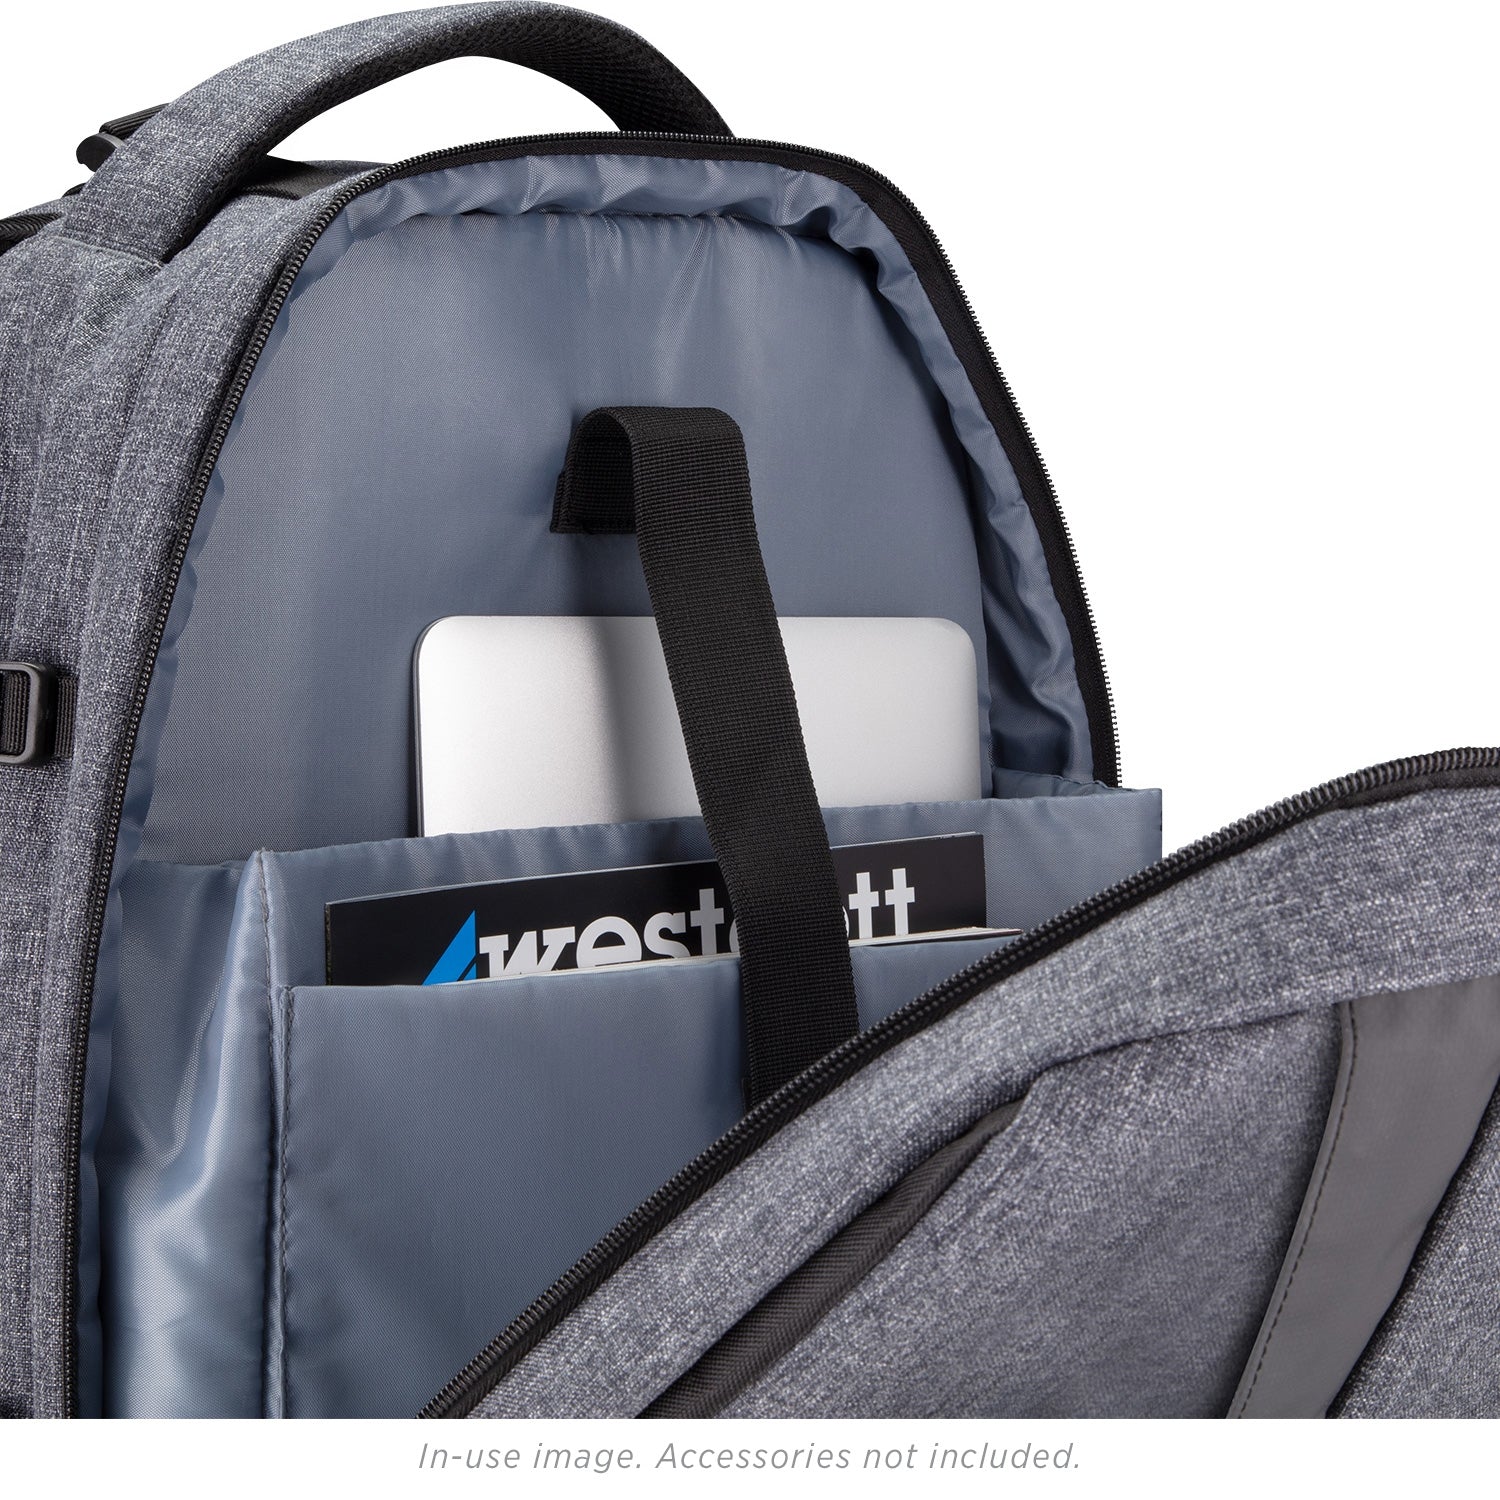 FJ200 Strobe 2-Light Backpack Kit with FJ-X3 M Universal Wireless Trig